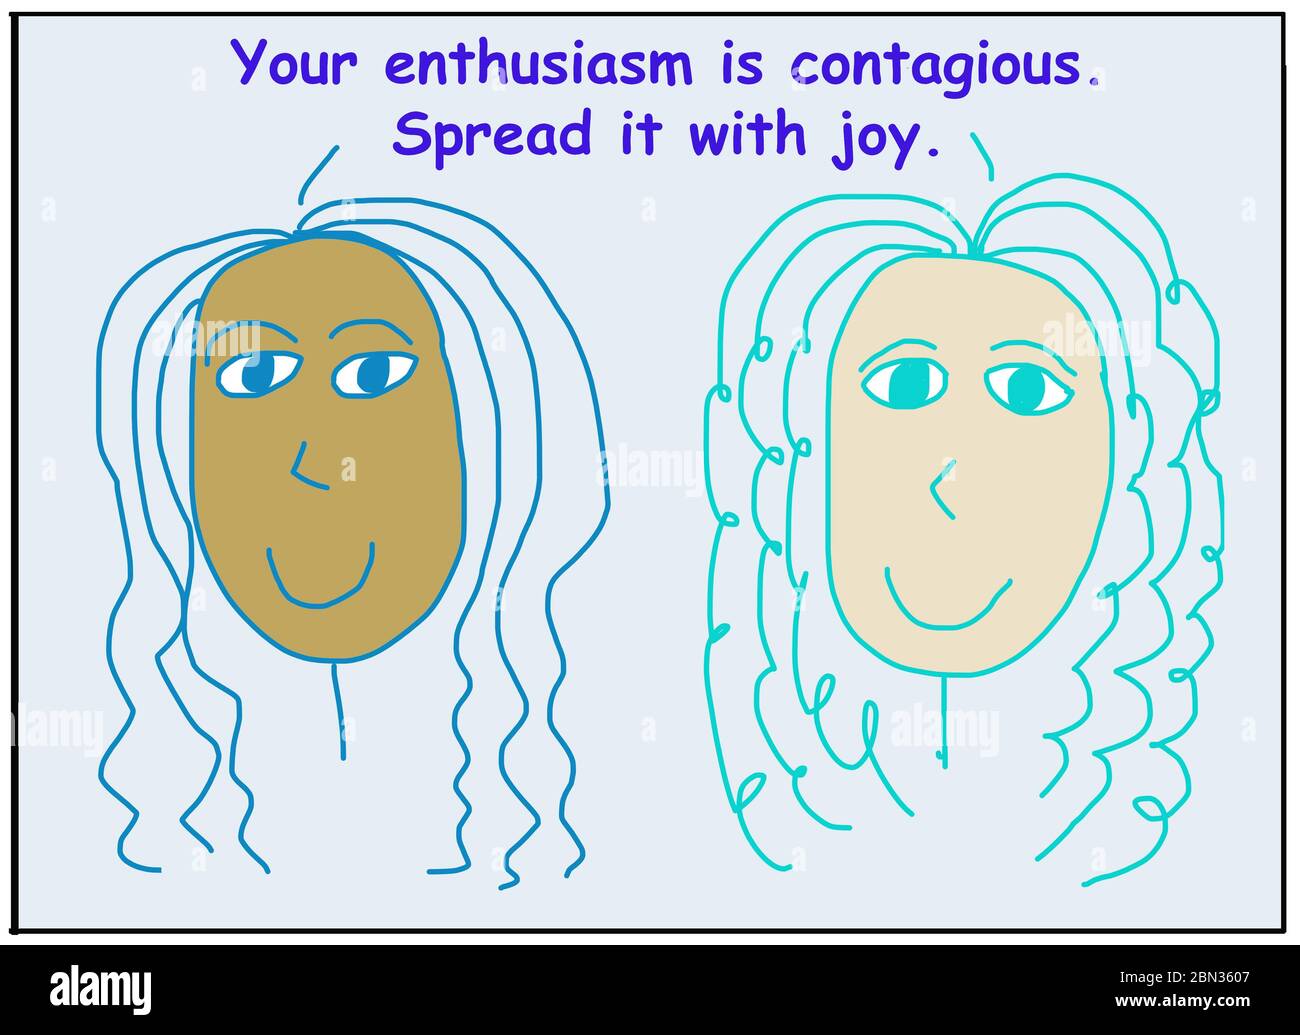 Farbe Cartoon von zwei lächelnden und ethnisch vielfältigen Frauen, die sagen, Ihre Begeisterung ansteckend ist, verbreiten sie mit Freude. Stockfoto